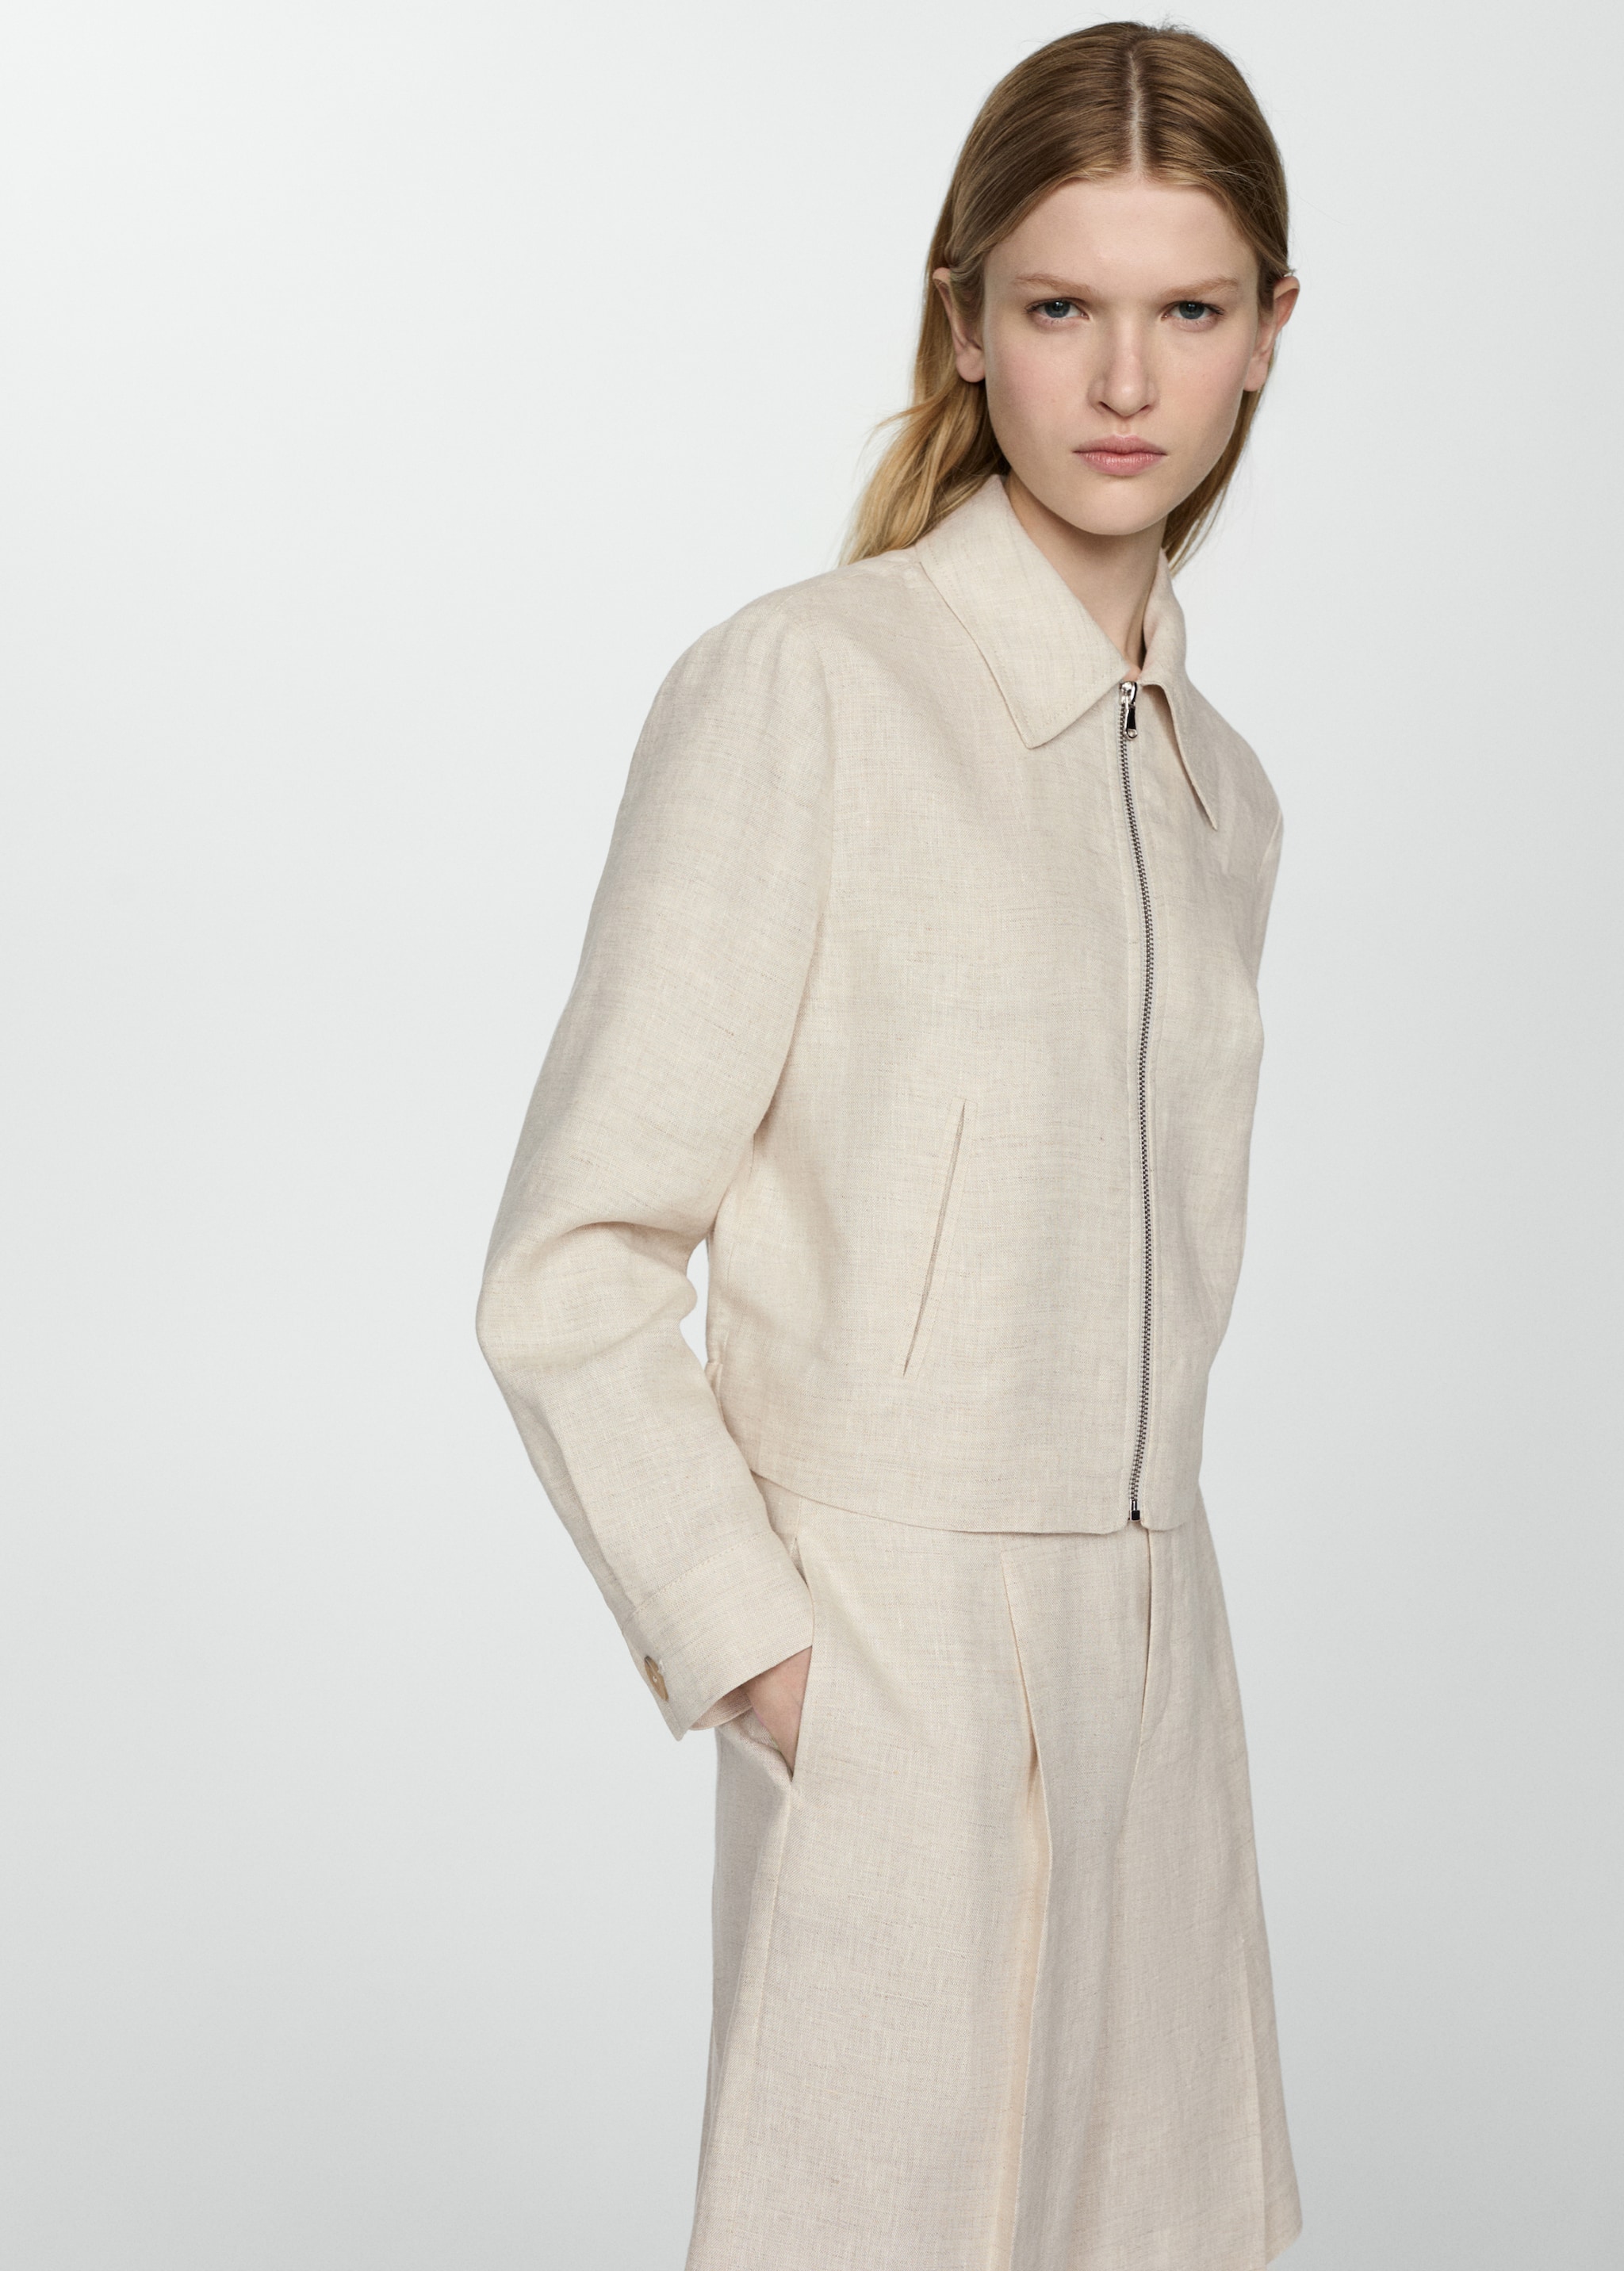 100% linen jacket with zip - Medium plane